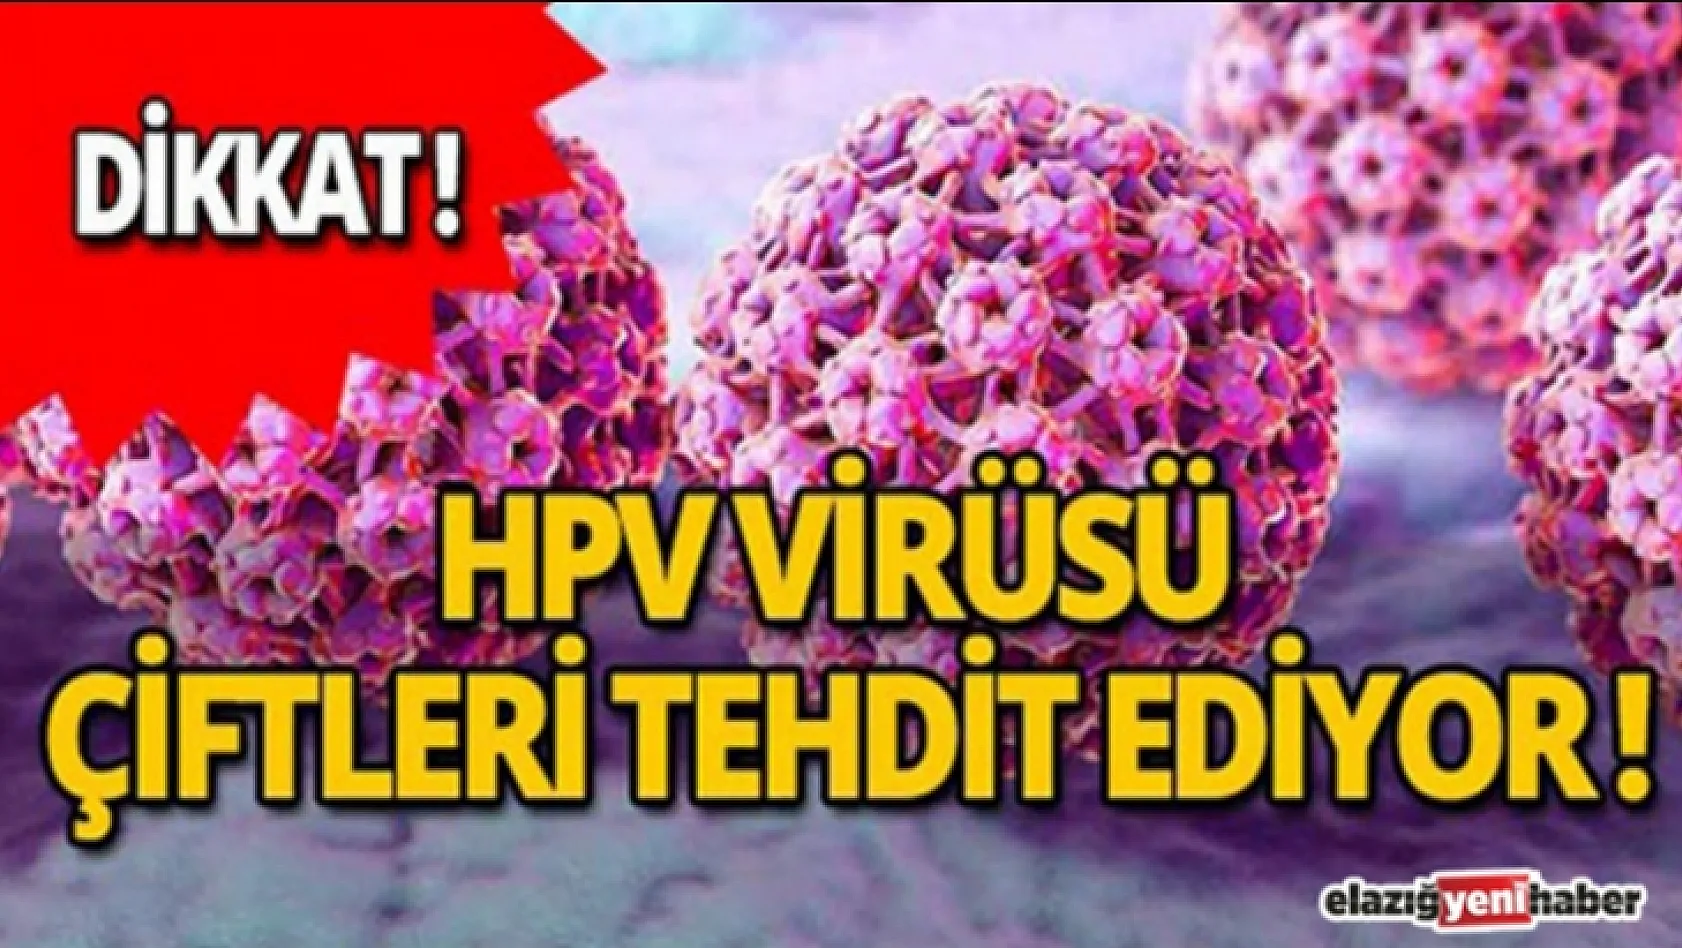 HPV Virüsü Tüm Dünyayı Tehdit Ediyor